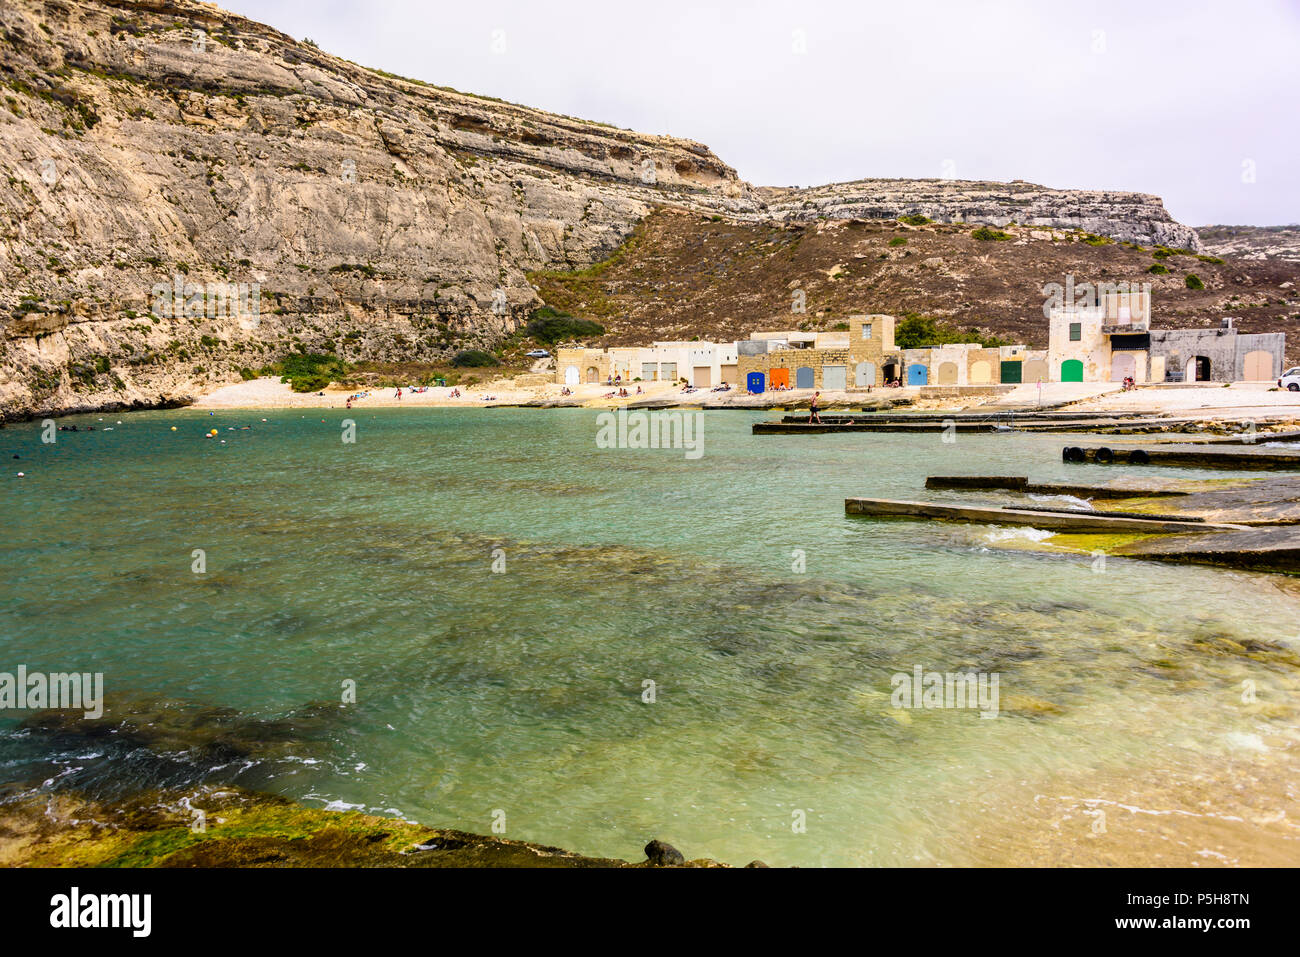 Bateau colorés des maisons à Dwerja, la mer intérieure, Gozo, Malte. Banque D'Images